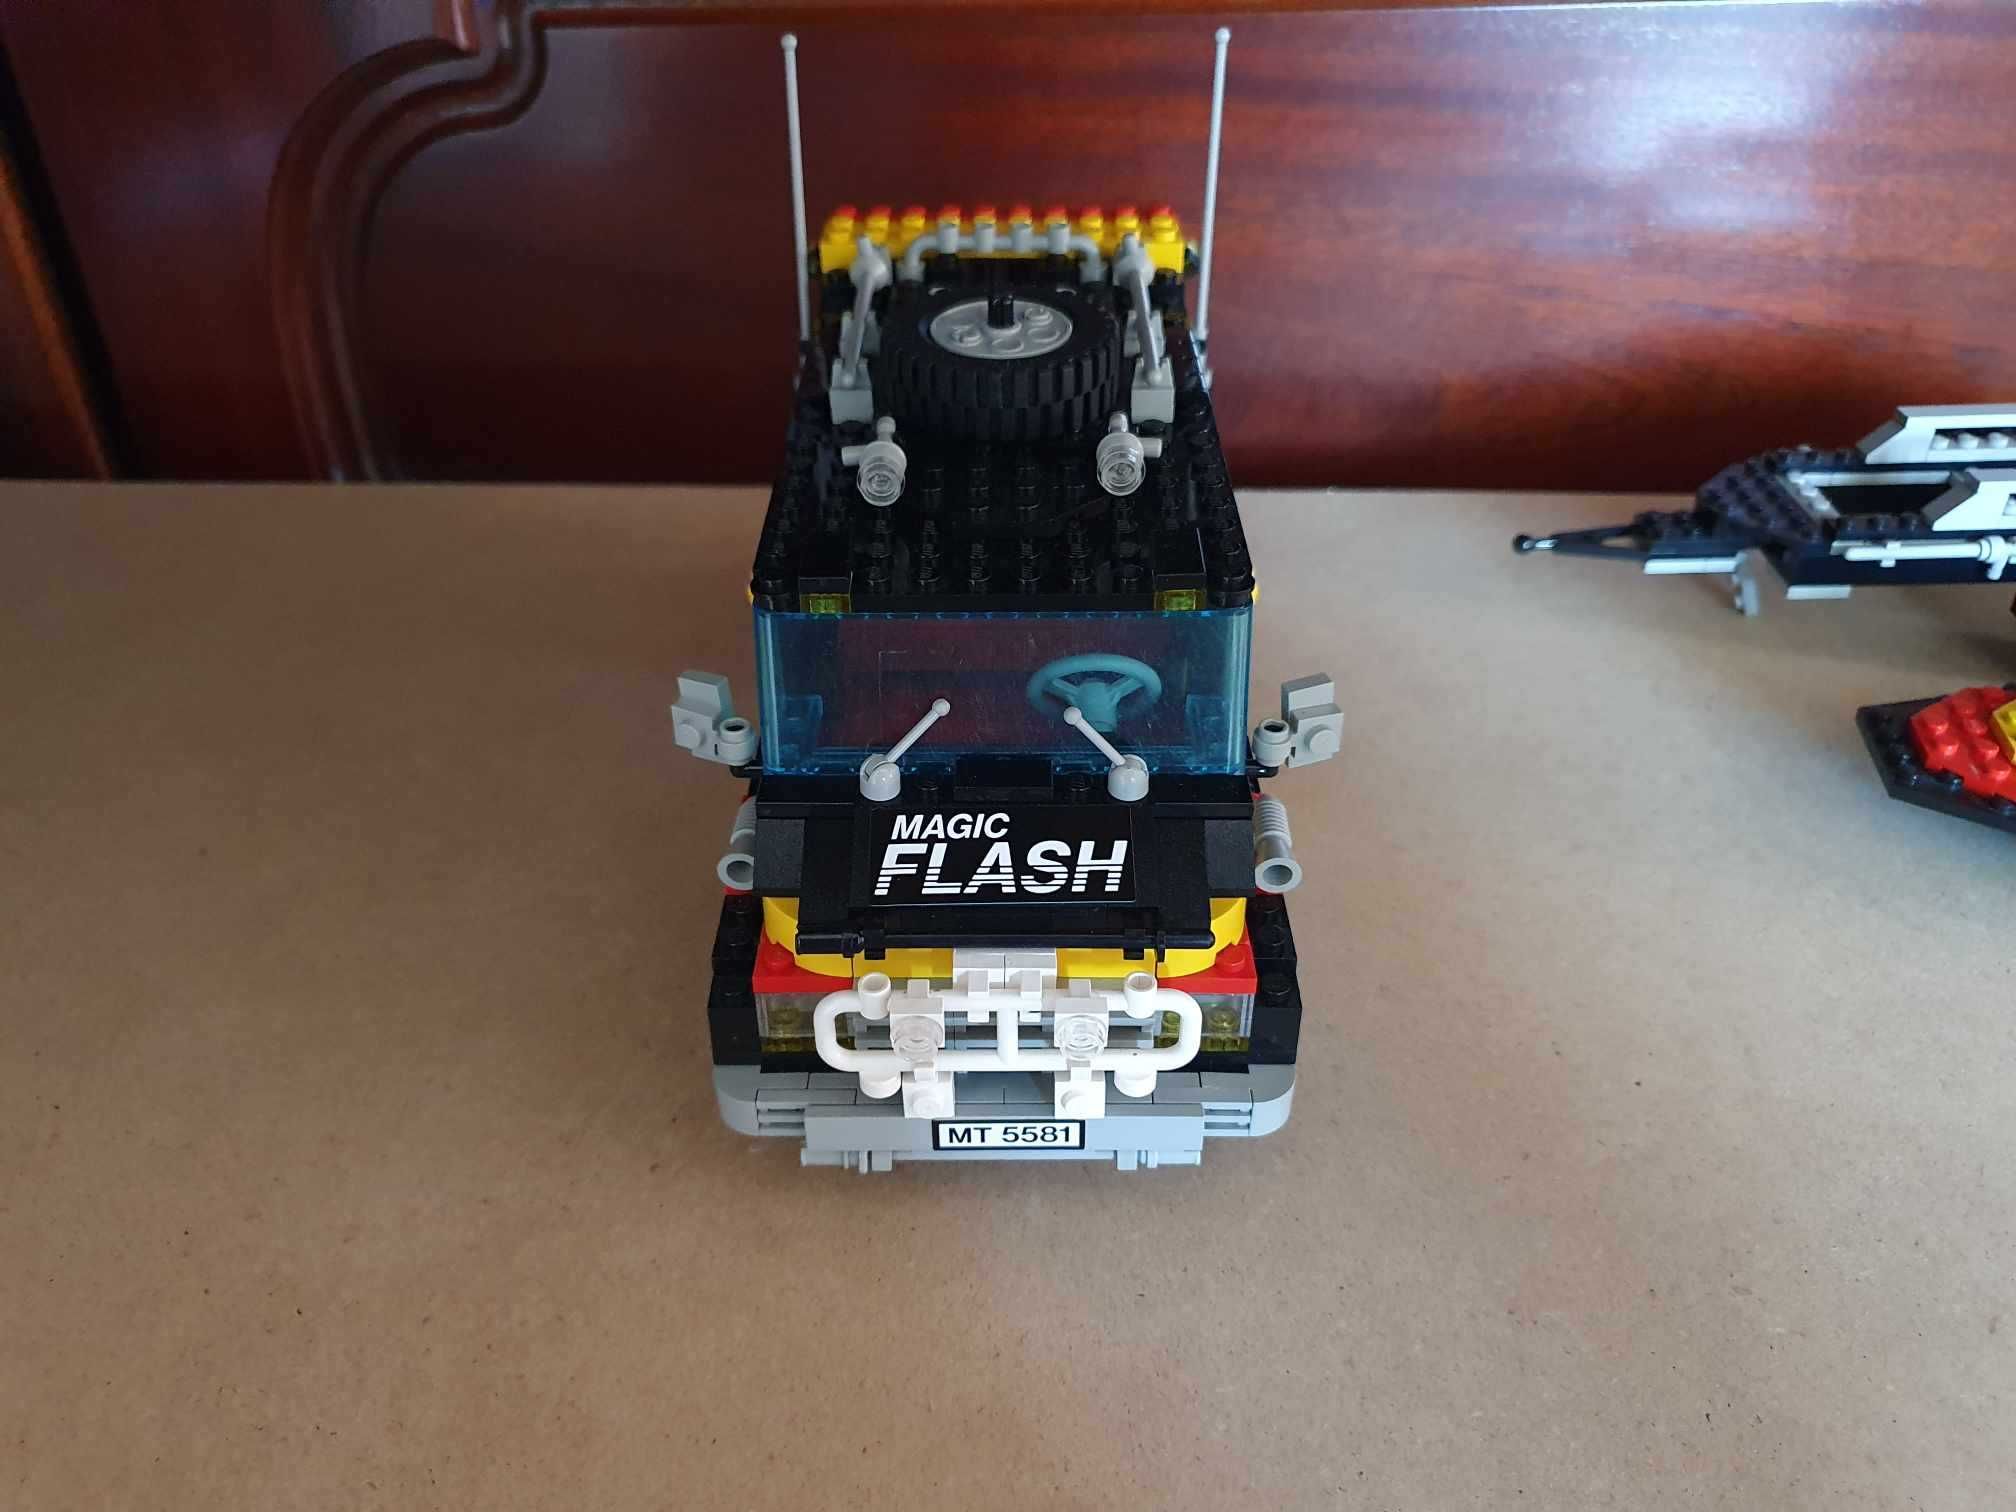 Lego Model Team 5581